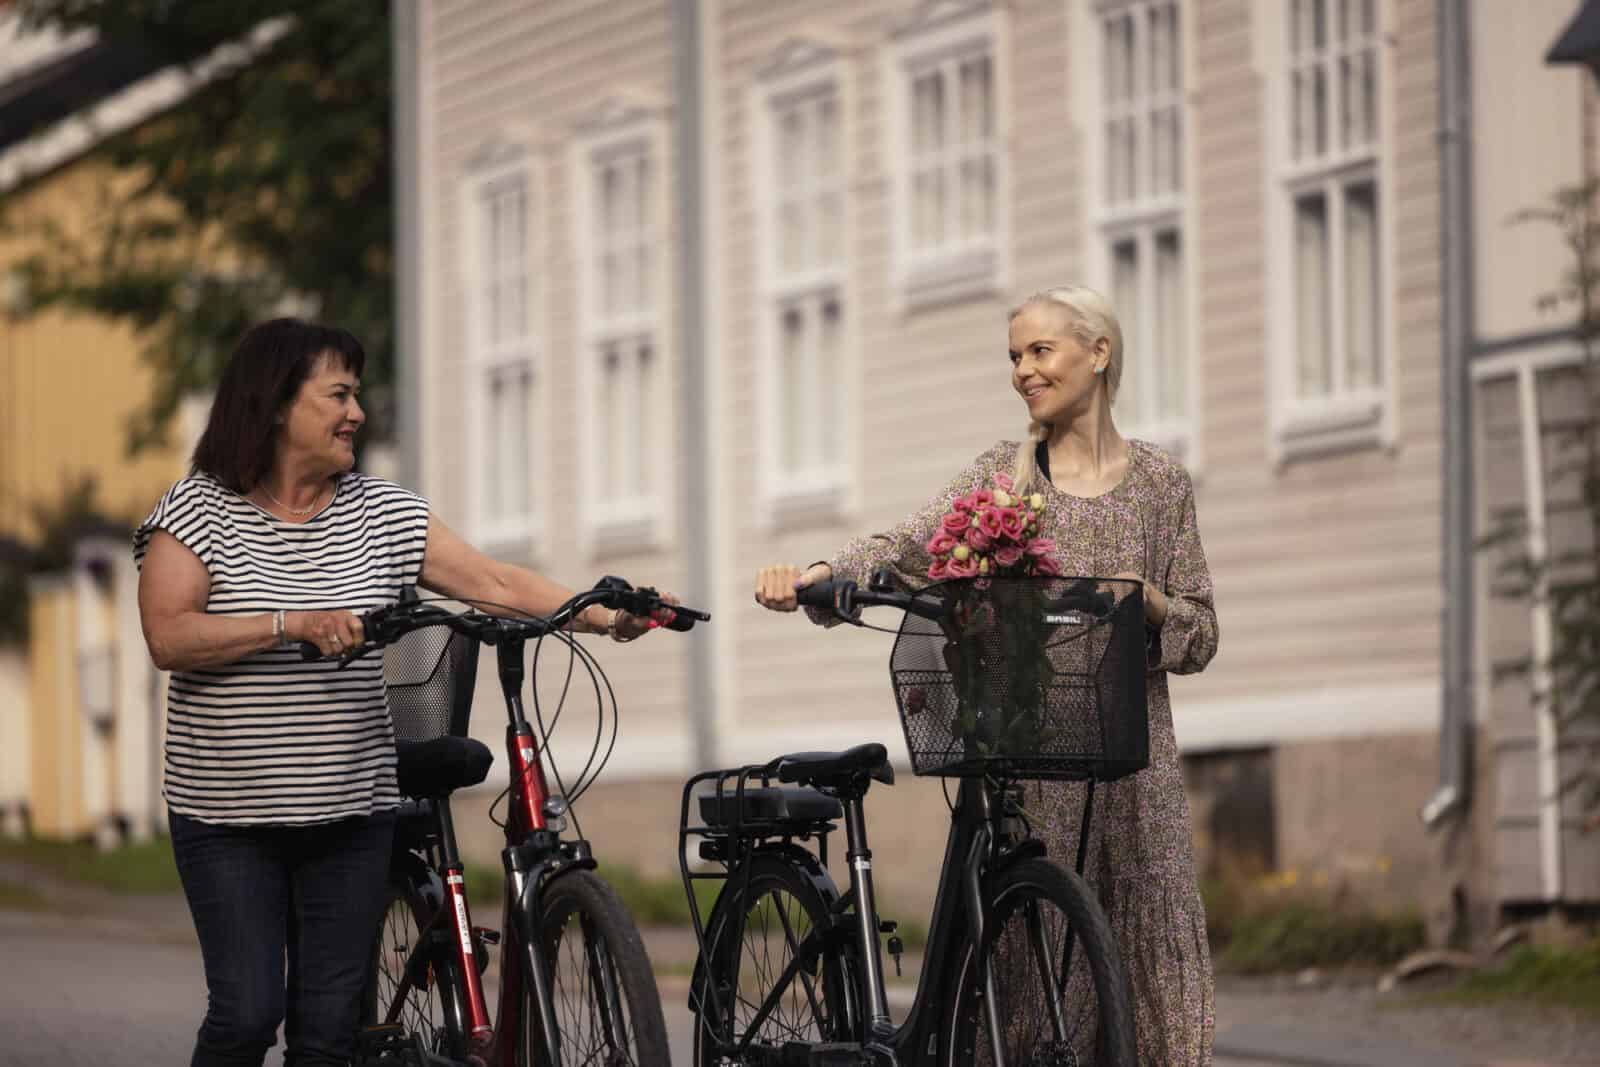 Två kvinnor cyklar. Det finns blommor i korgen på den andra cykeln. Kvinnorna ler, ett rosa trähus syns i bakgrunden.